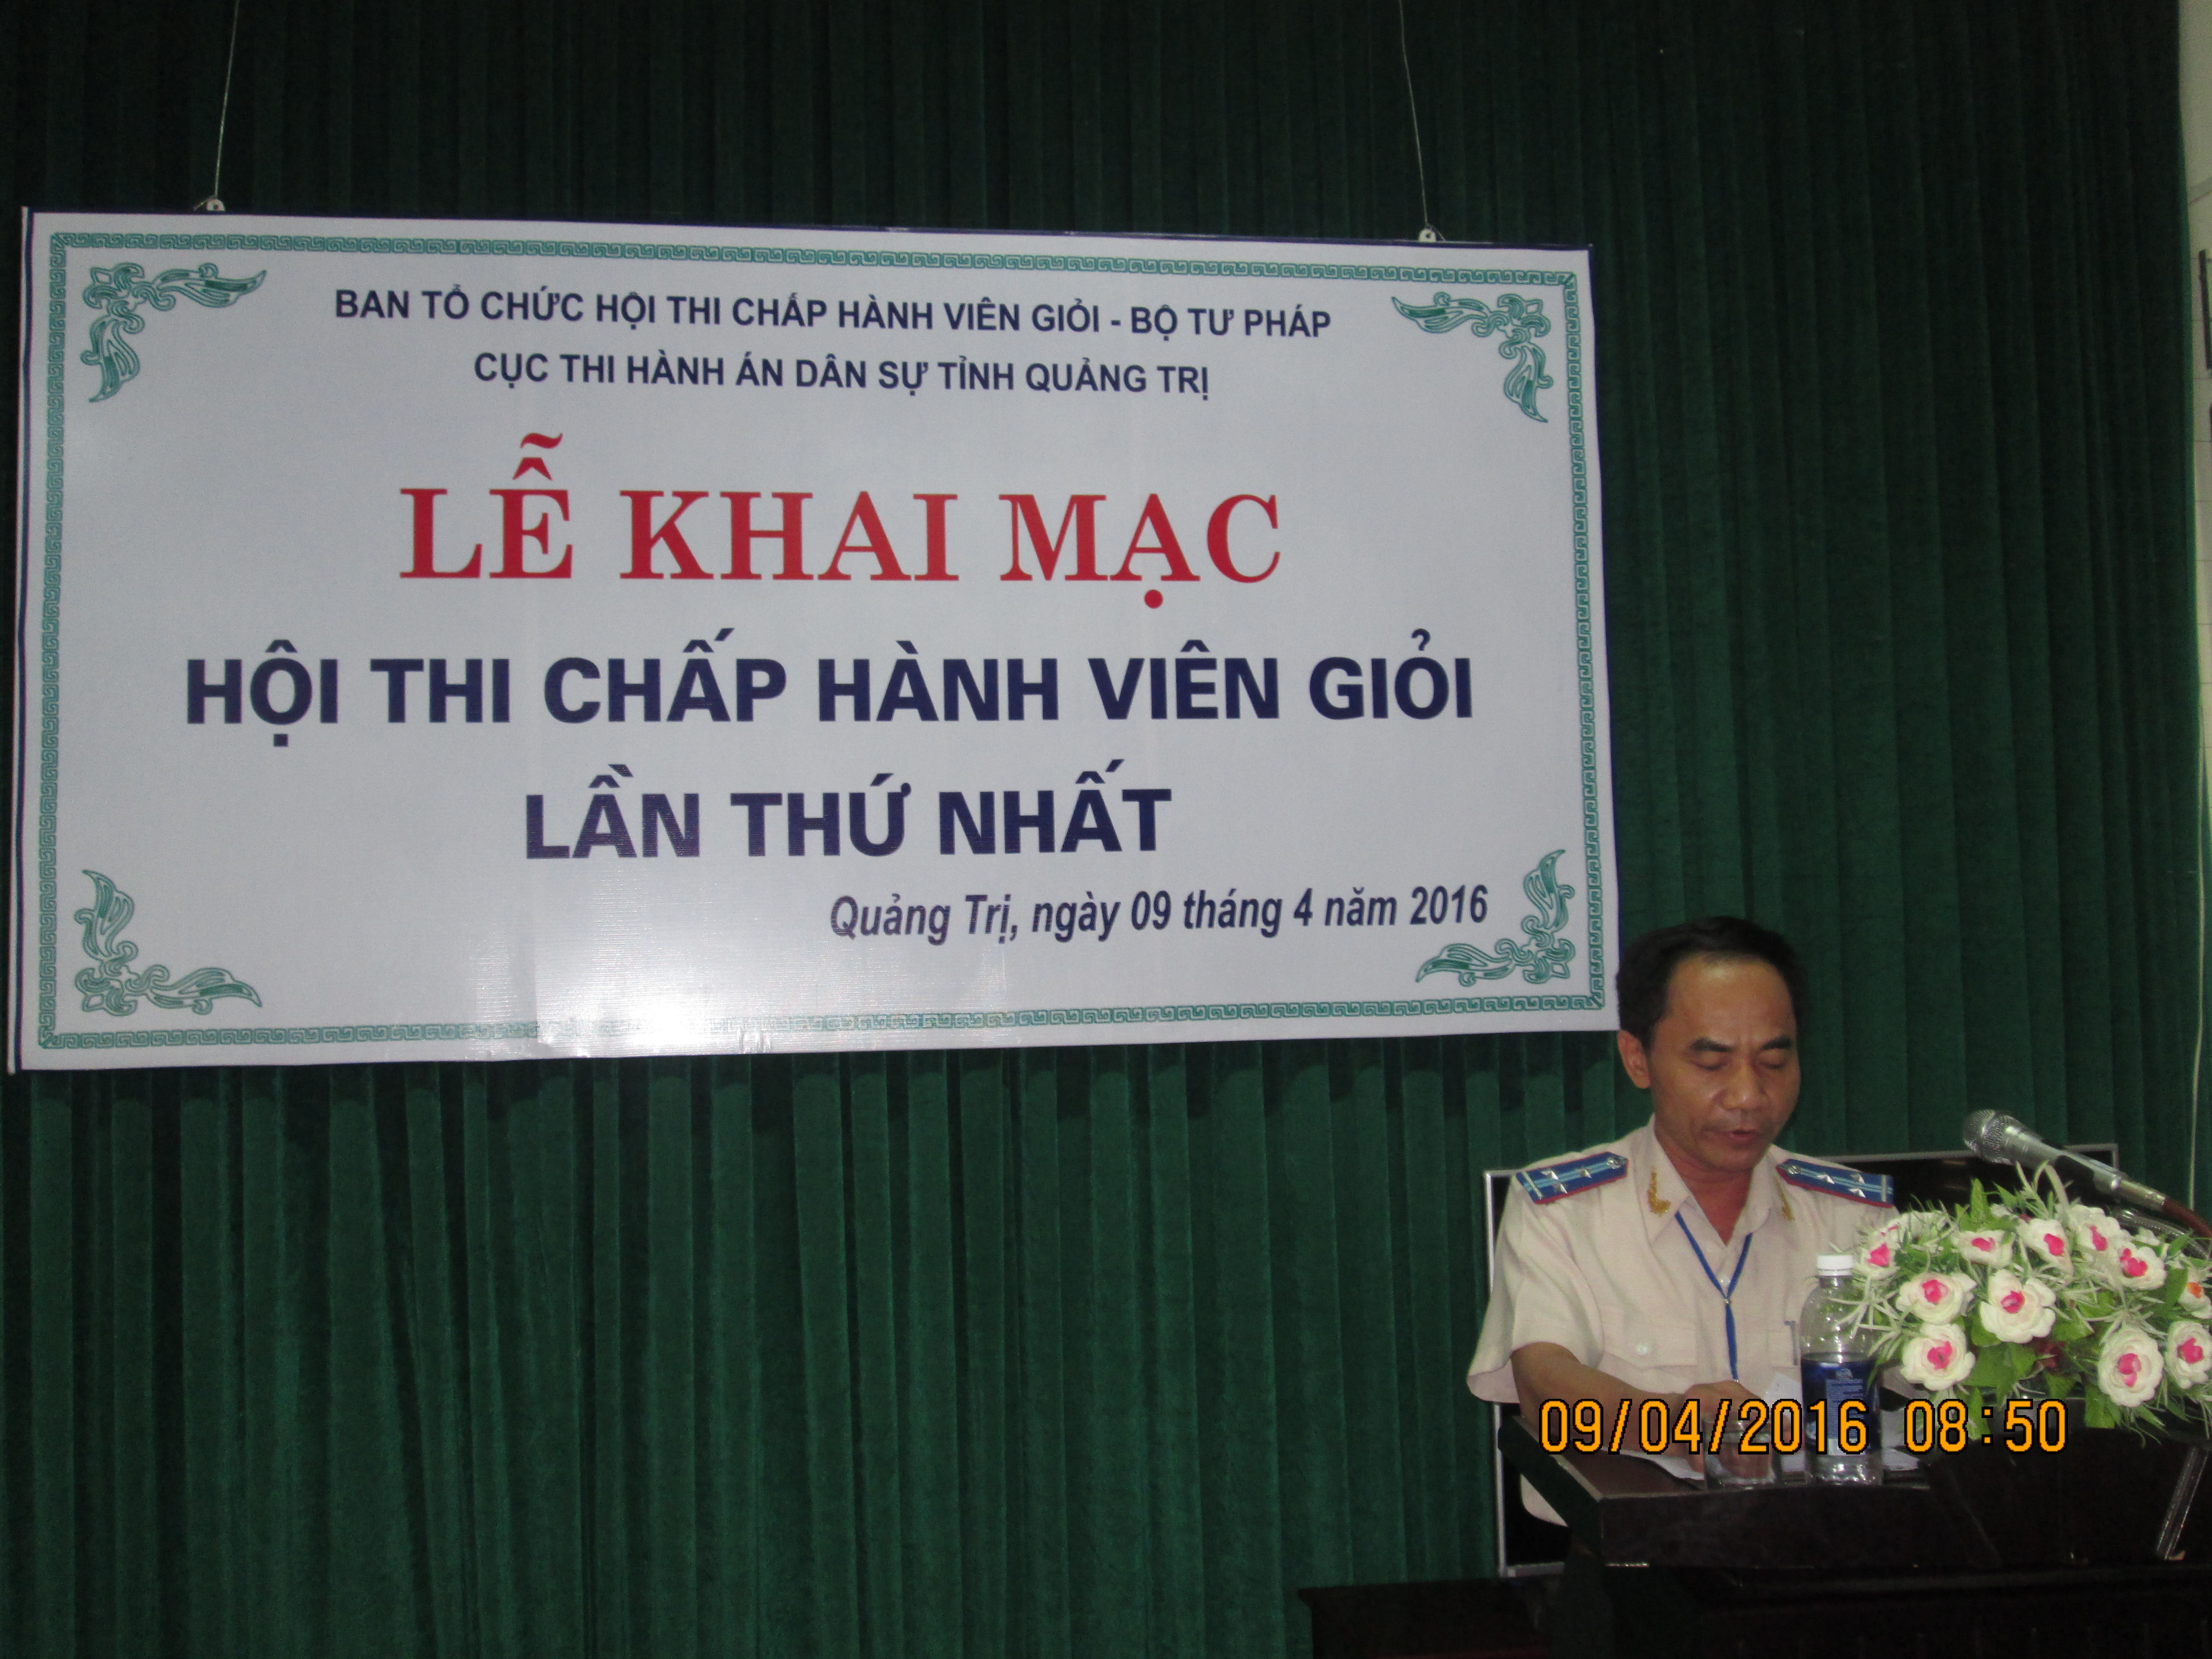 Cục Thi hành án án dân sự tỉnh Quảng Trị tổ chức Hội thi Chấp hành viên giỏi lần thứ nhất